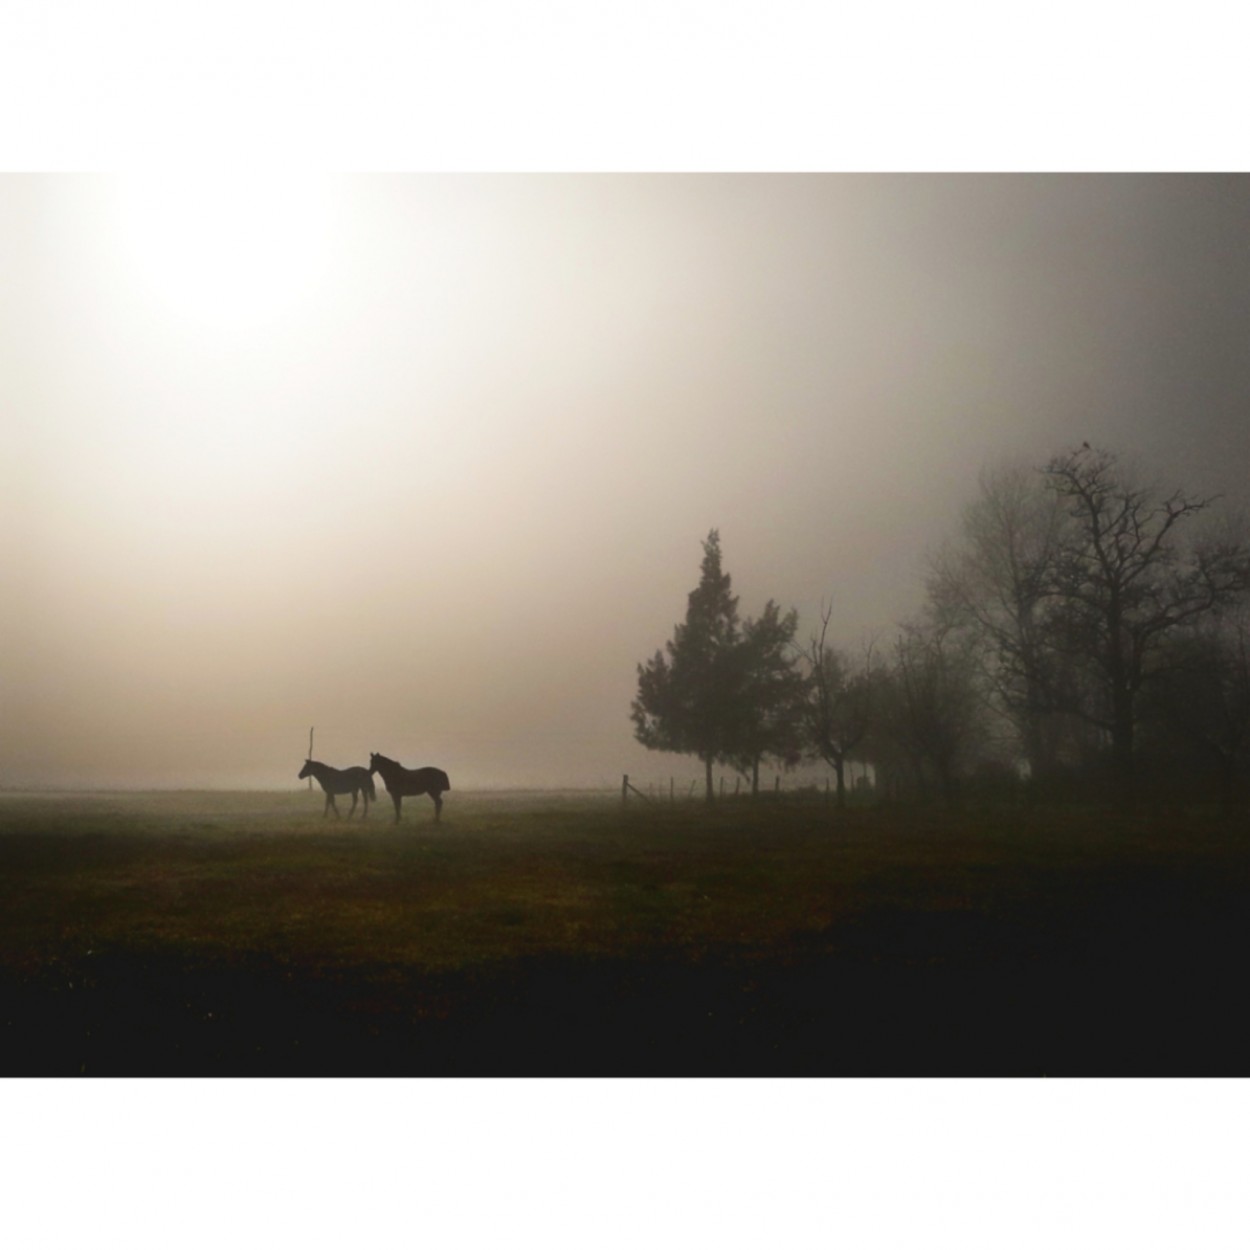 "Los caballos hacen el paisaje ms hermoso" de Gabriel Rigal